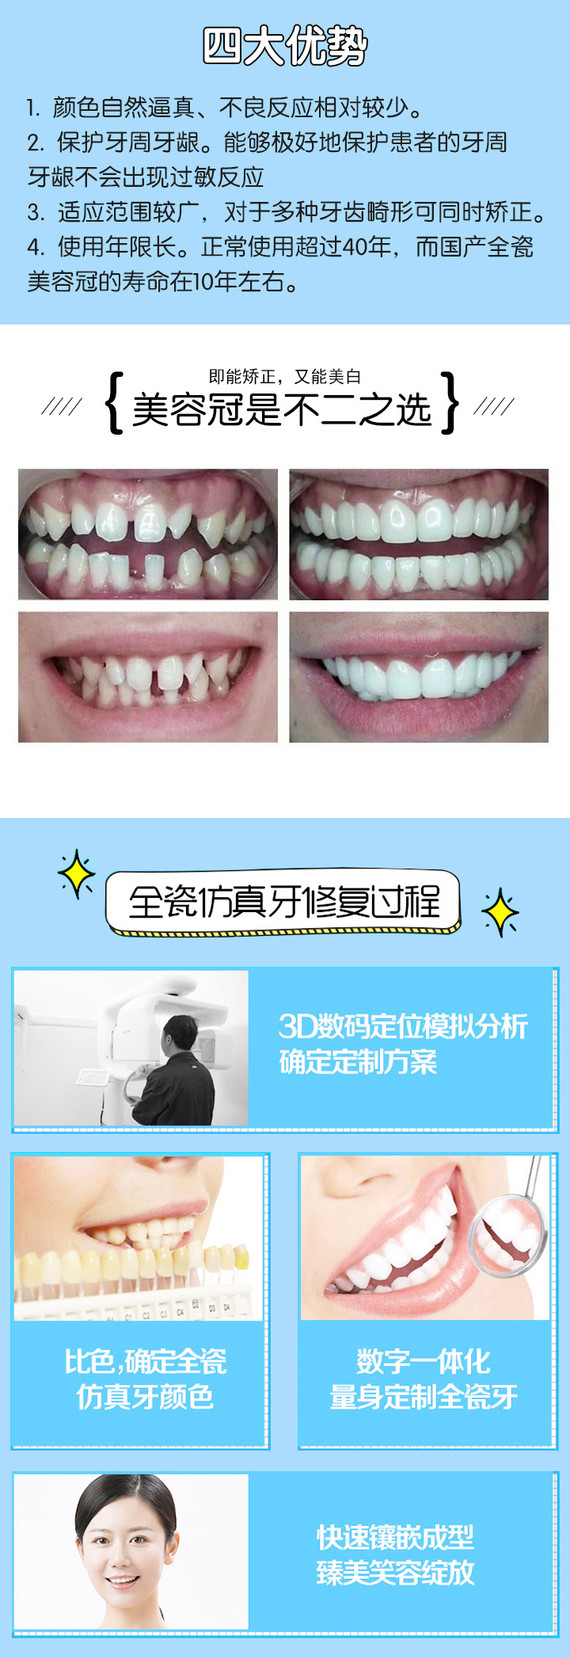 【全瓷牙】【二氧化锆全瓷牙】镶牙 牙冠 全瓷冠美容修复 牙套 口腔